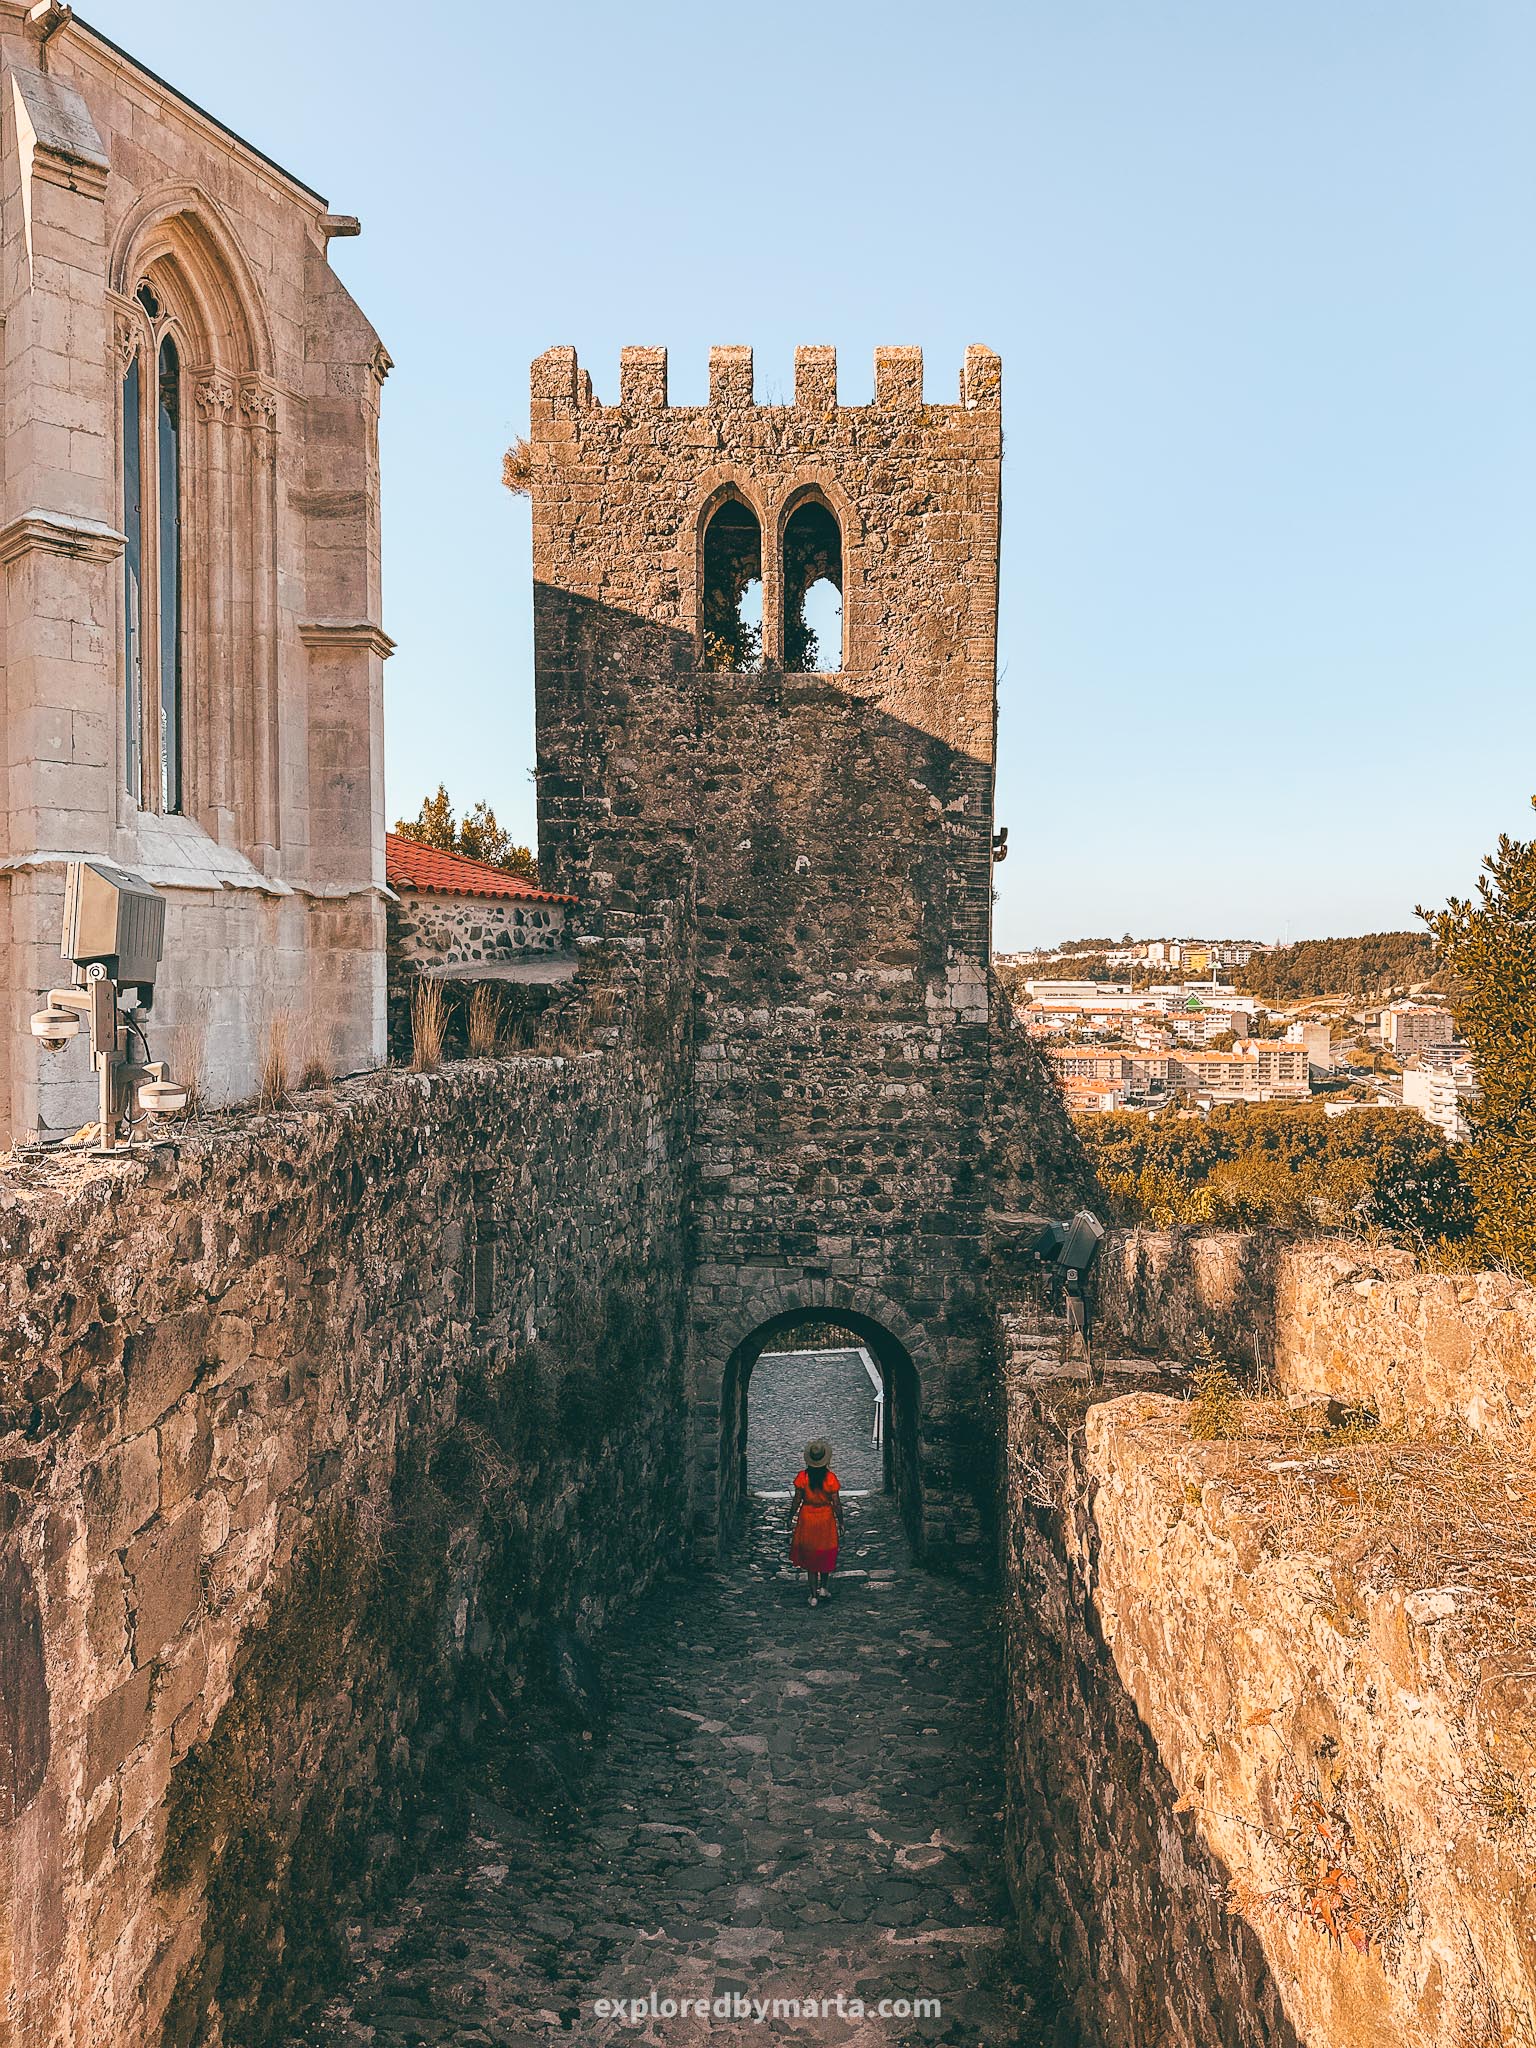 Castelo de Leiria medieval castle in Portugal